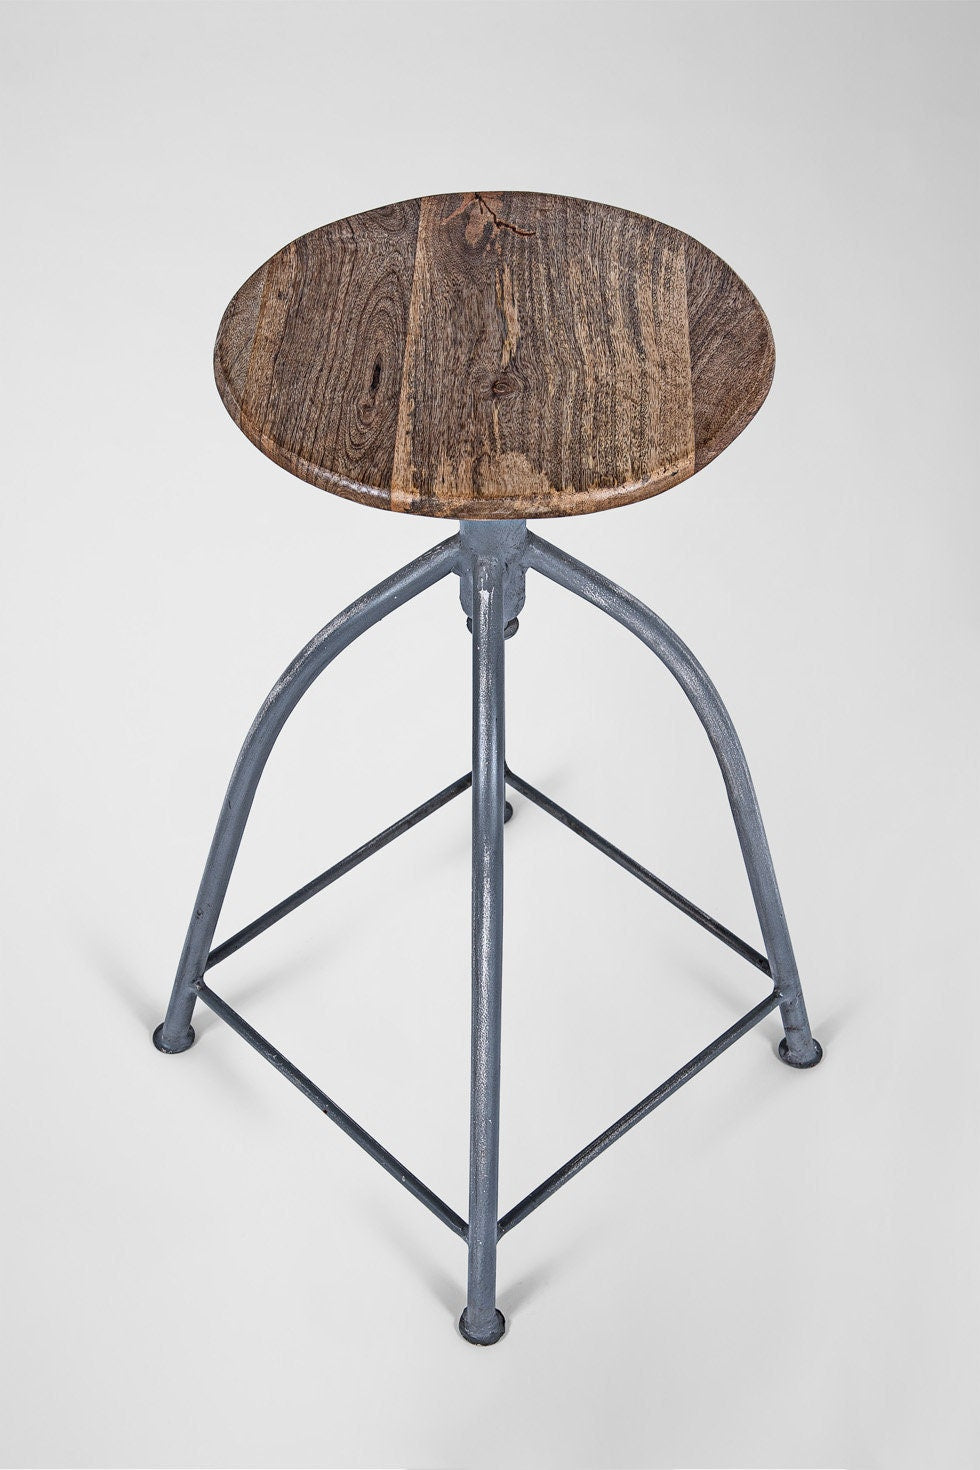 Mrs. Greyhound – Retro Vintage Industrie Design Hocker aus Metall mit Holzsitz